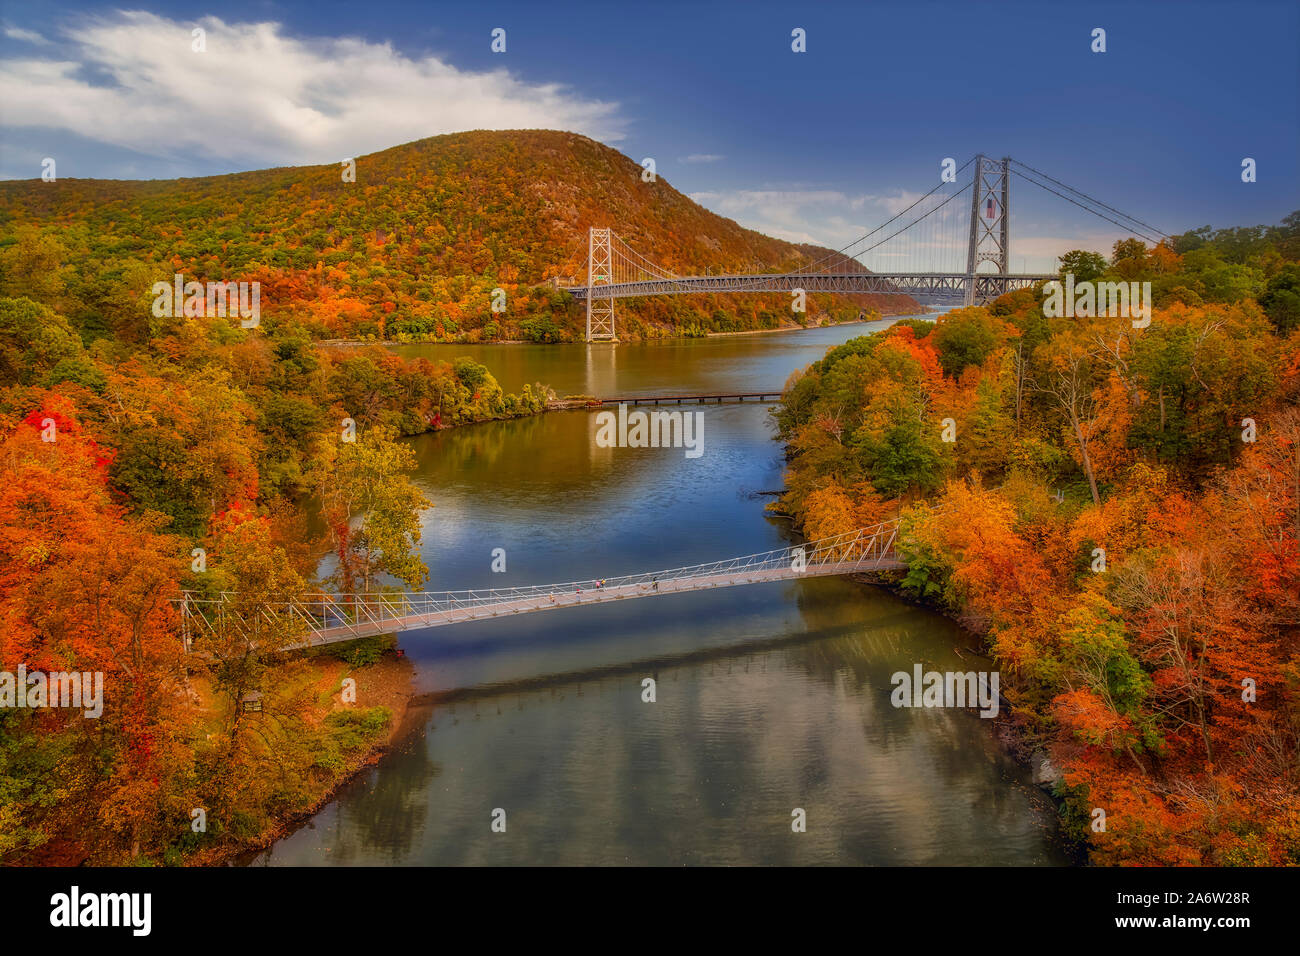 L'automne à Bear Mountain - pont à pont sud à Bear Mountain, CSX railroad tracks pont sur la rivière Hudson et Popolopen passerelle. Banque D'Images